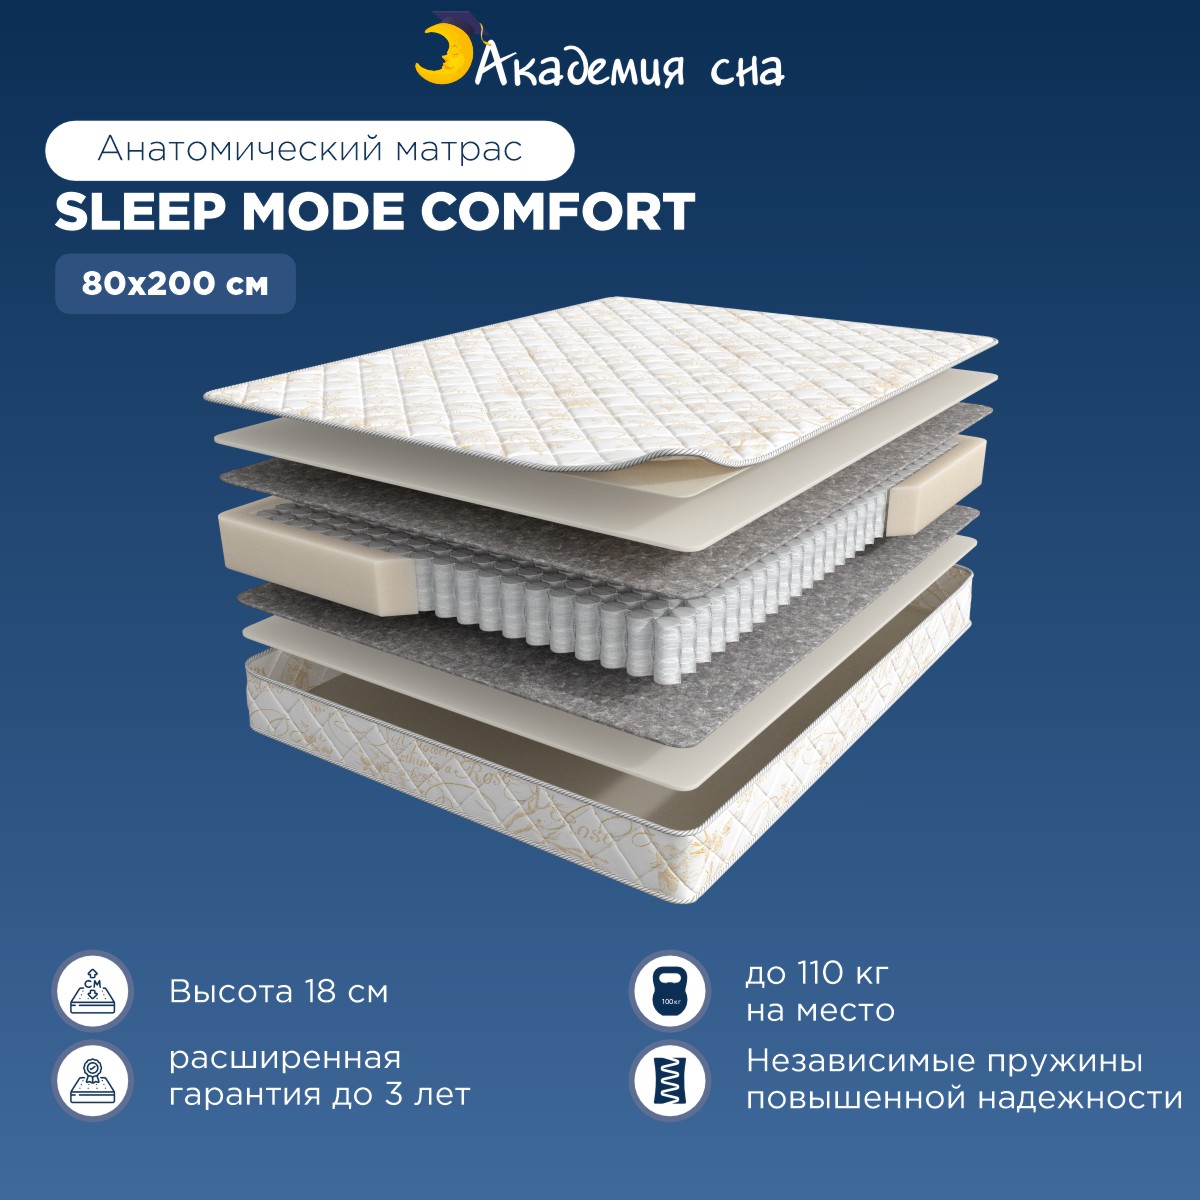 Матрас Академия сна Sleep Mode Comfort 80x200 - купить в Москве, цены на Мегамаркет